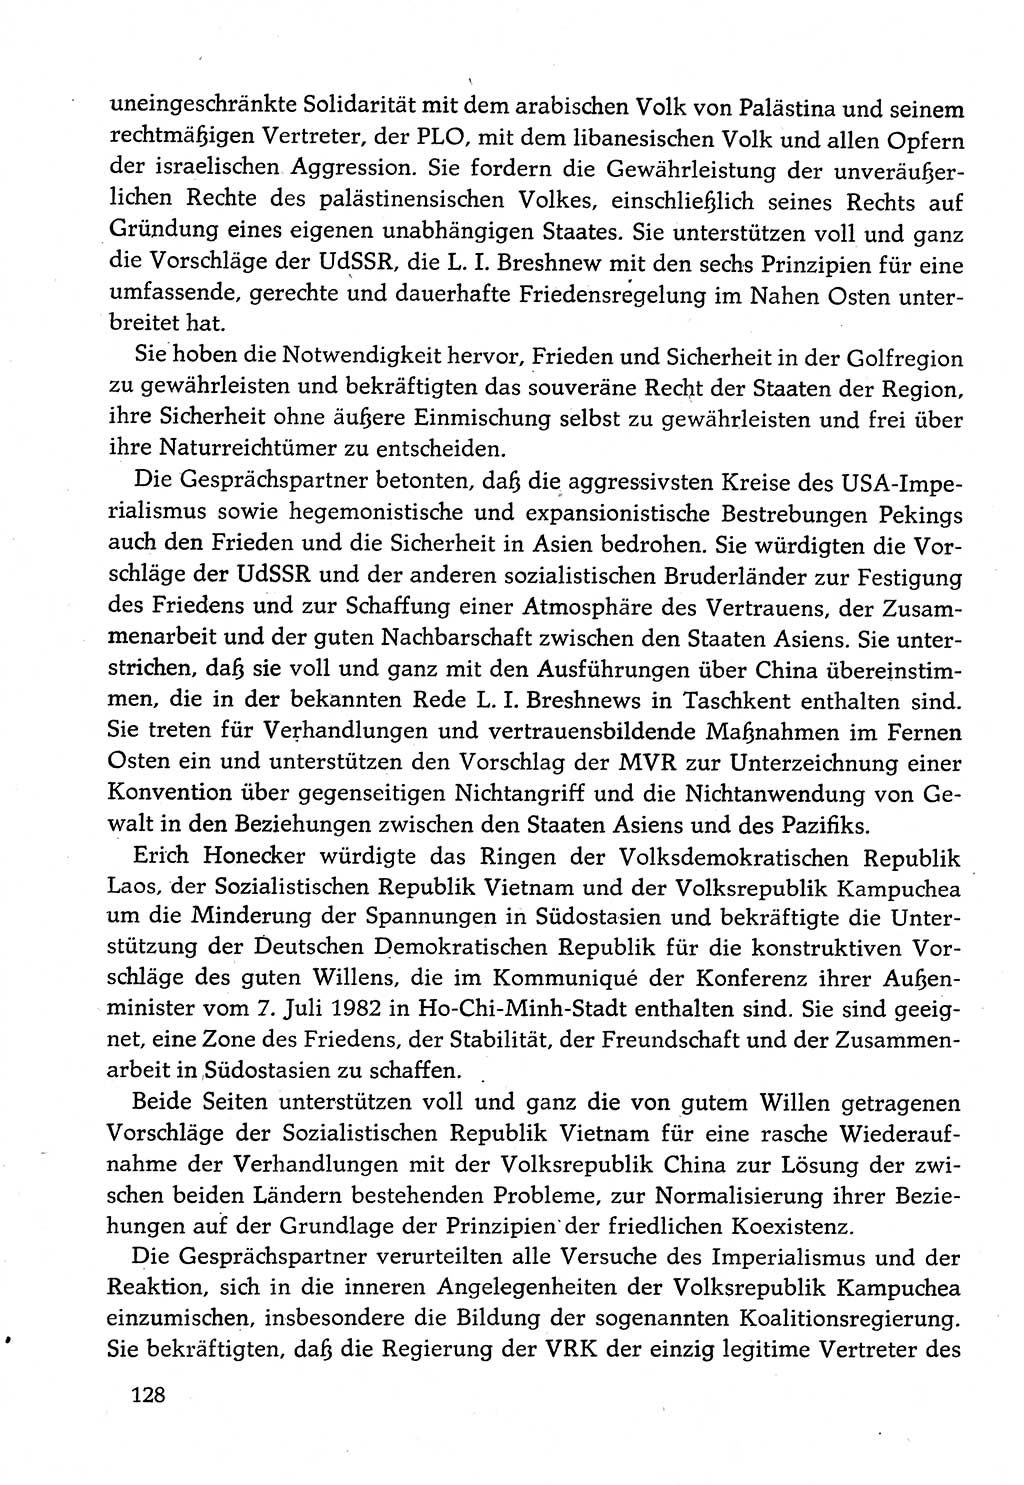 Dokumente der Sozialistischen Einheitspartei Deutschlands (SED) [Deutsche Demokratische Republik (DDR)] 1982-1983, Seite 128 (Dok. SED DDR 1982-1983, S. 128)